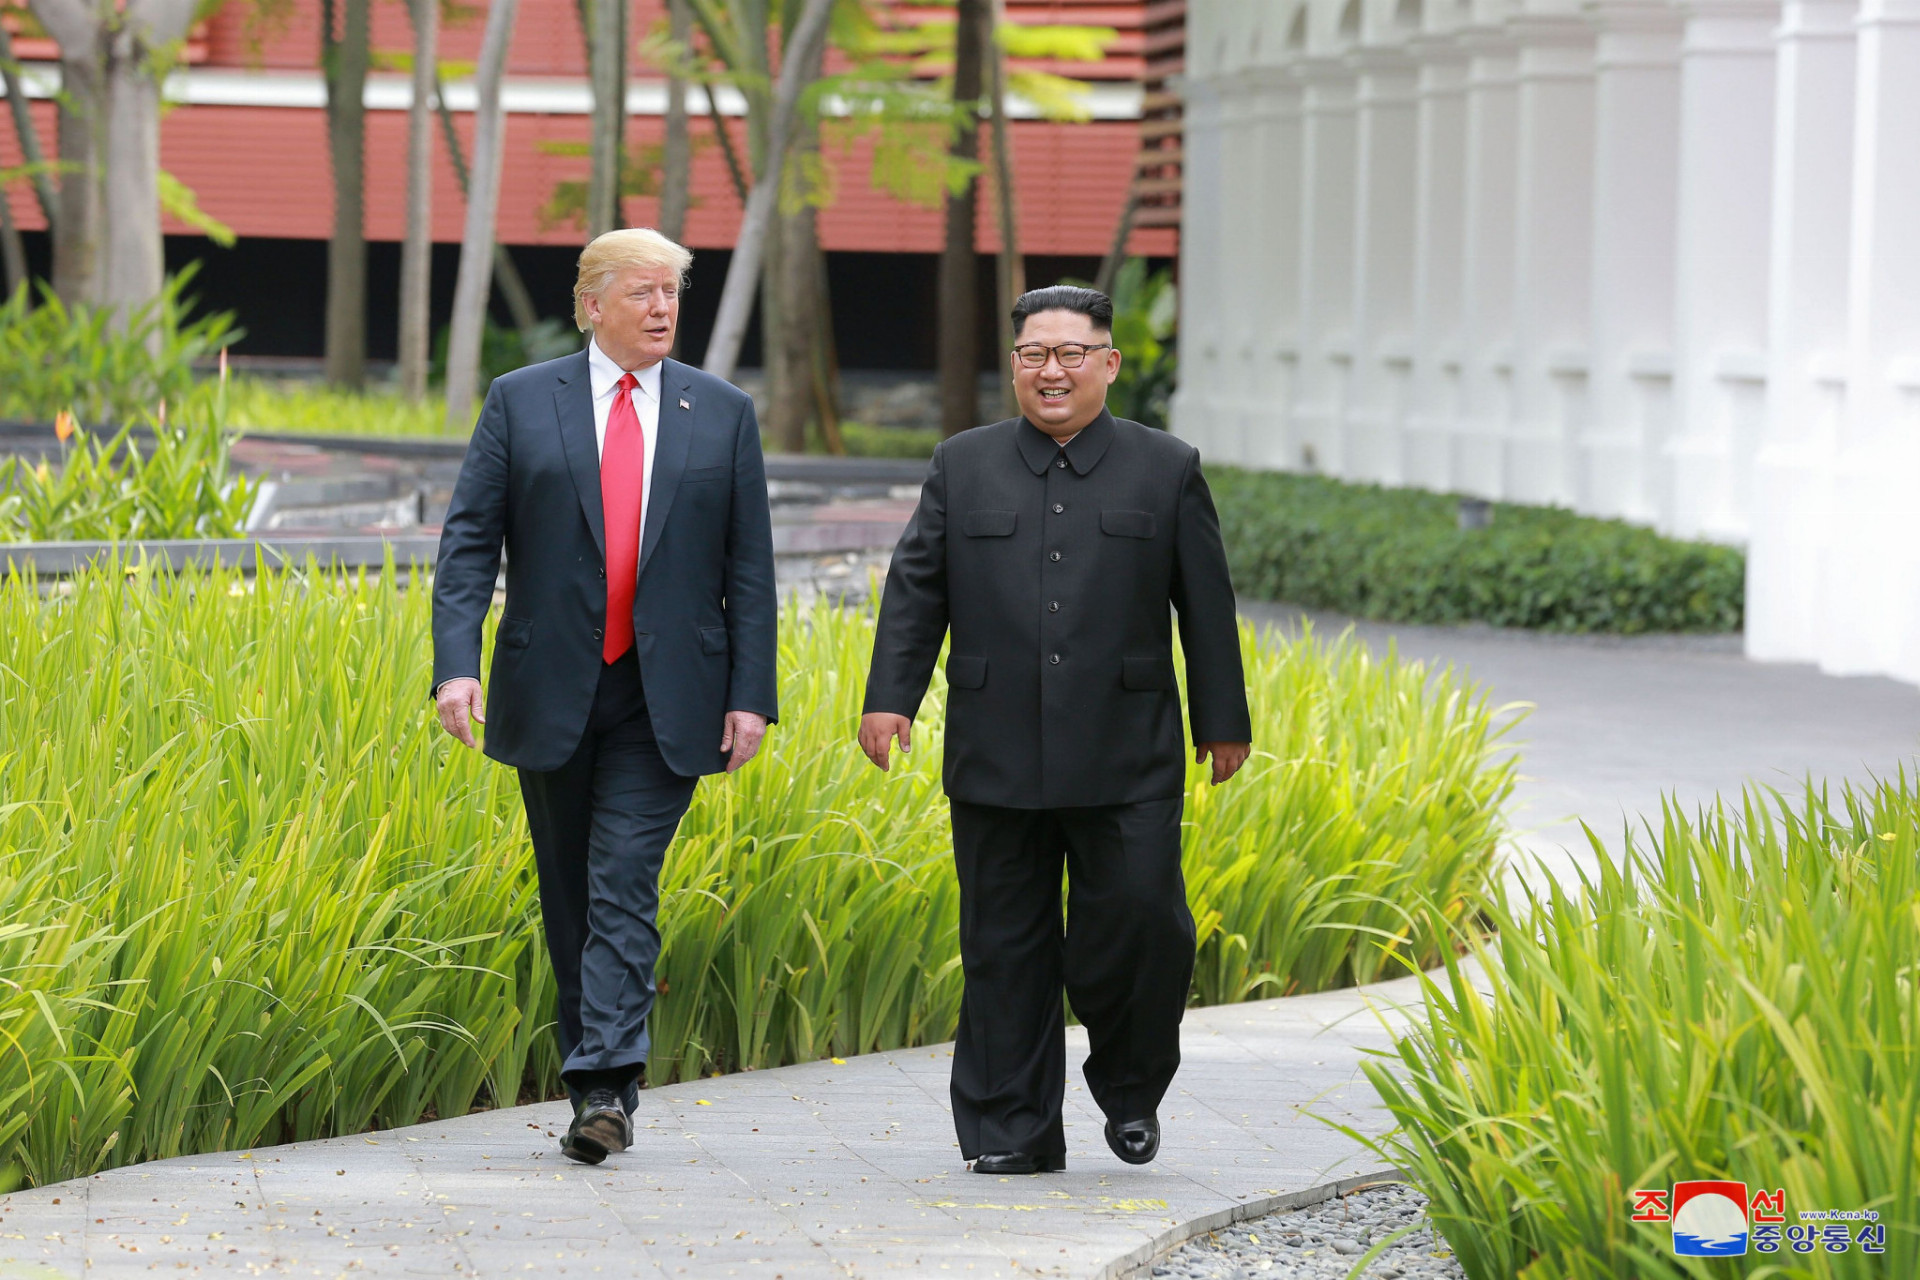 Obaja prezidenti sa zatiaľ na ďalšom vzájomnom rokovaní nedohodli. Donald Trump však povedal, že Kim Čong-una plánuje pozvať do Bieleho domu.